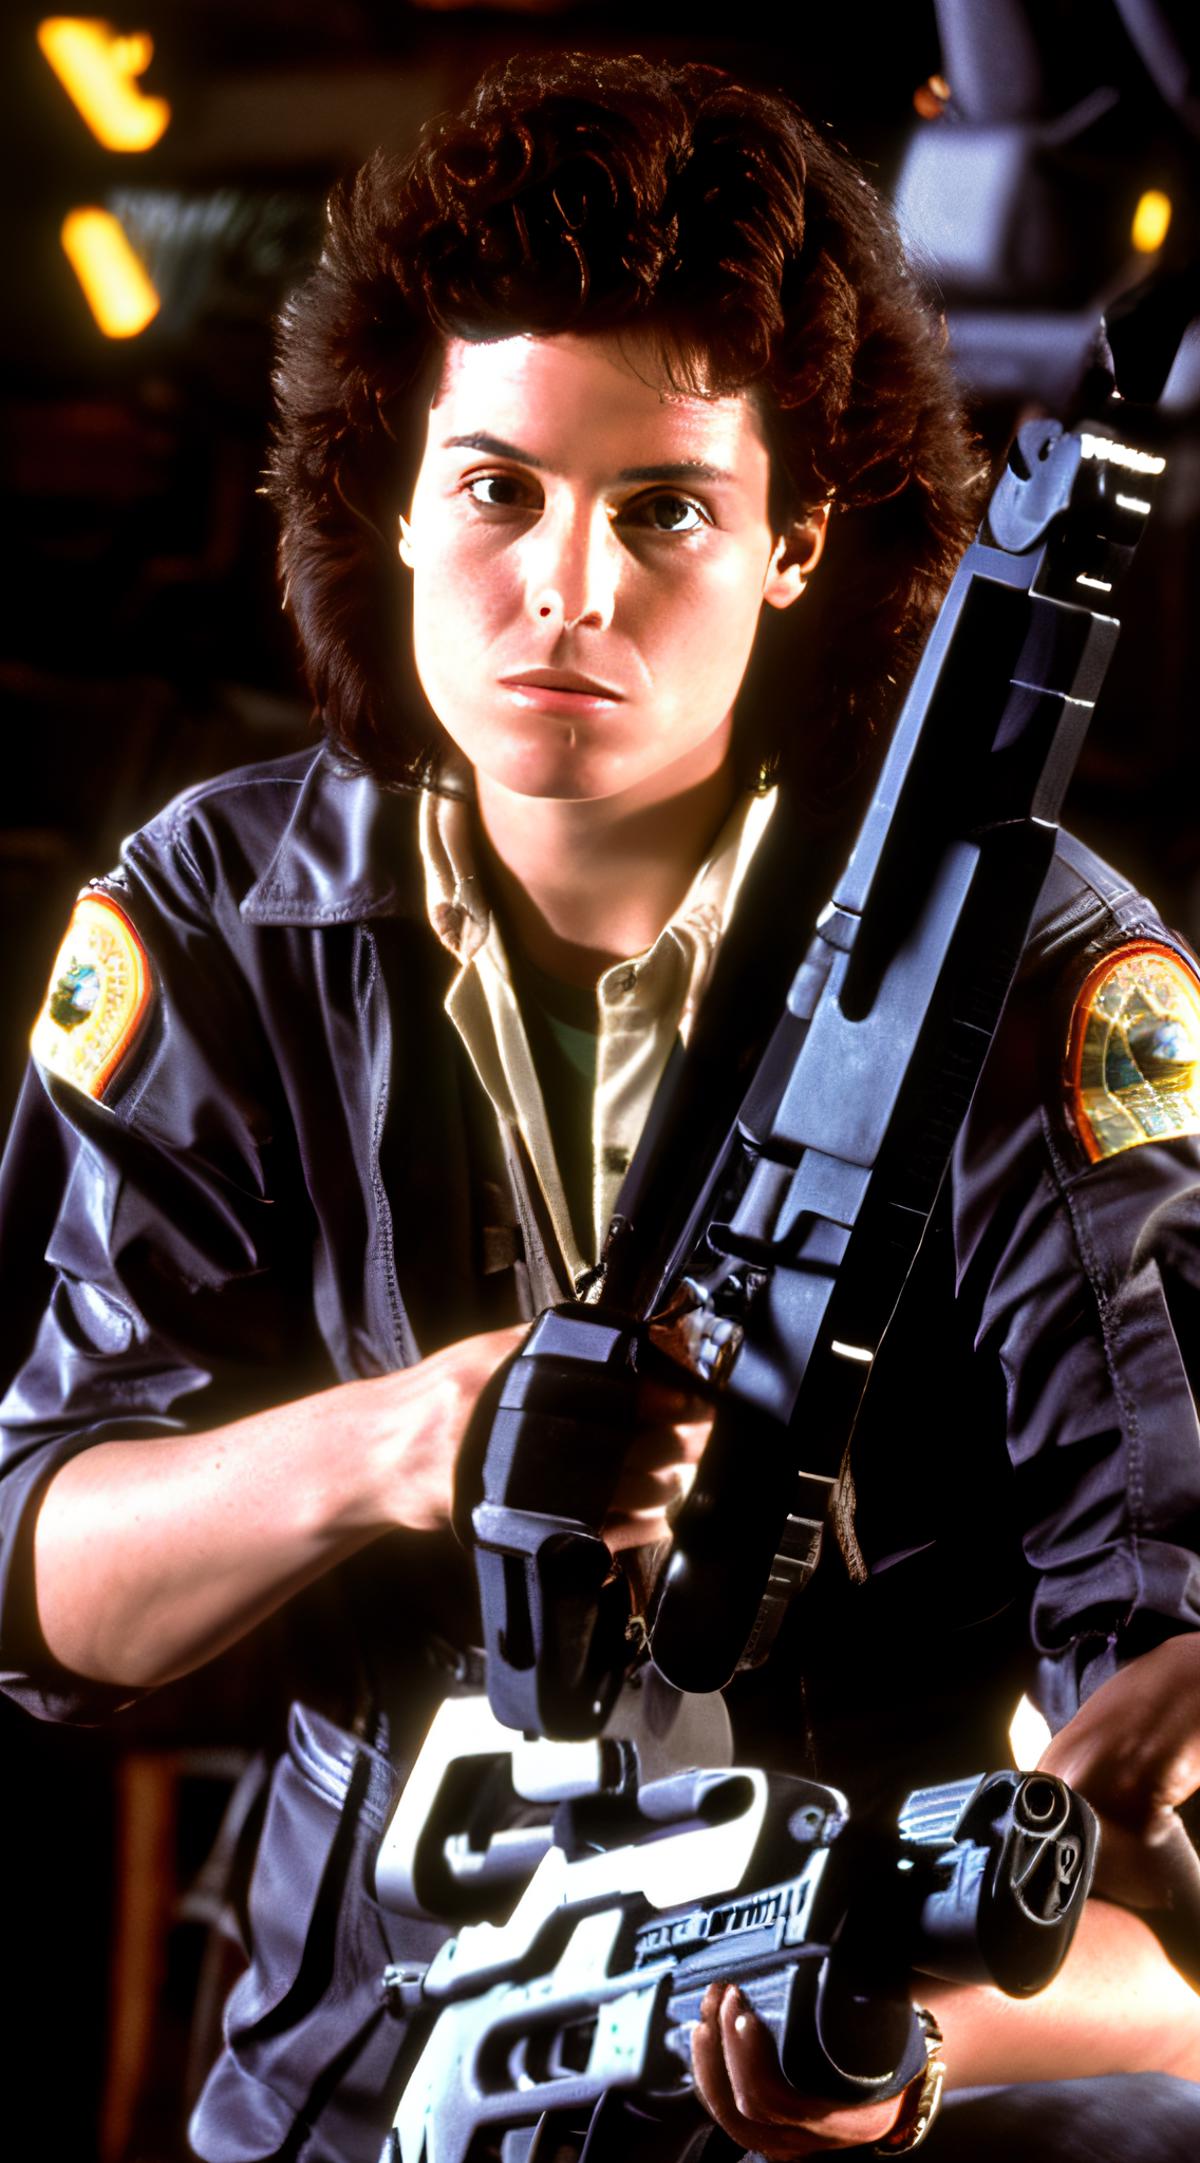 Sigourney Weaver - Ellen Ripley - Alien image by markplunder